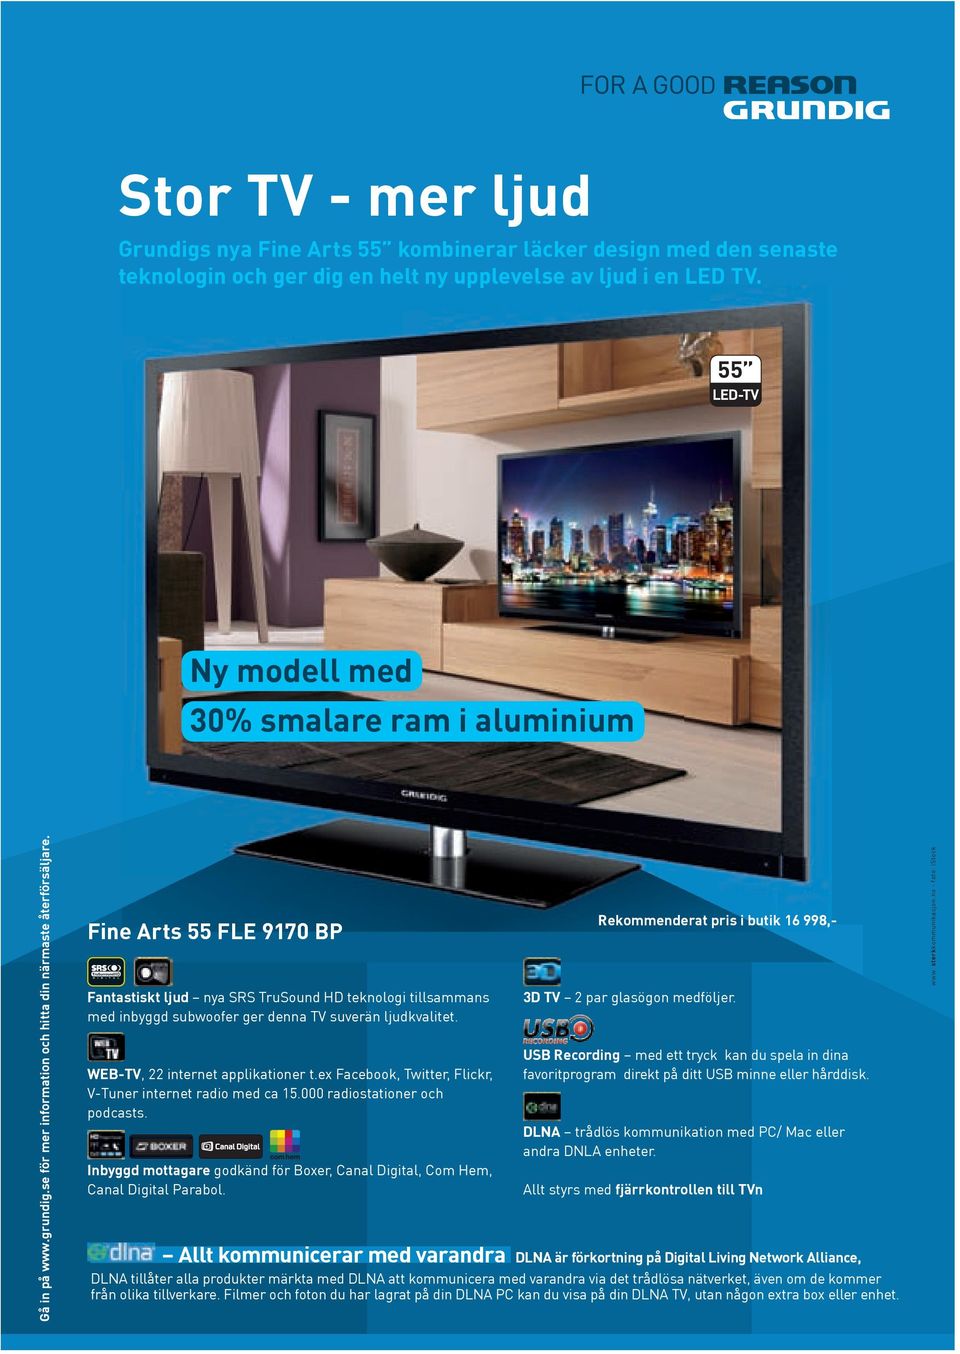 Fine Arts 55 FLE 9170 BP HD Fantastiskt ljud nya SRS TruSound HD teknologi tillsammans med inbyggd subwoofer ger denna TV suverän ljudkvalitet. WEB-TV, 22 internet applikationer t.